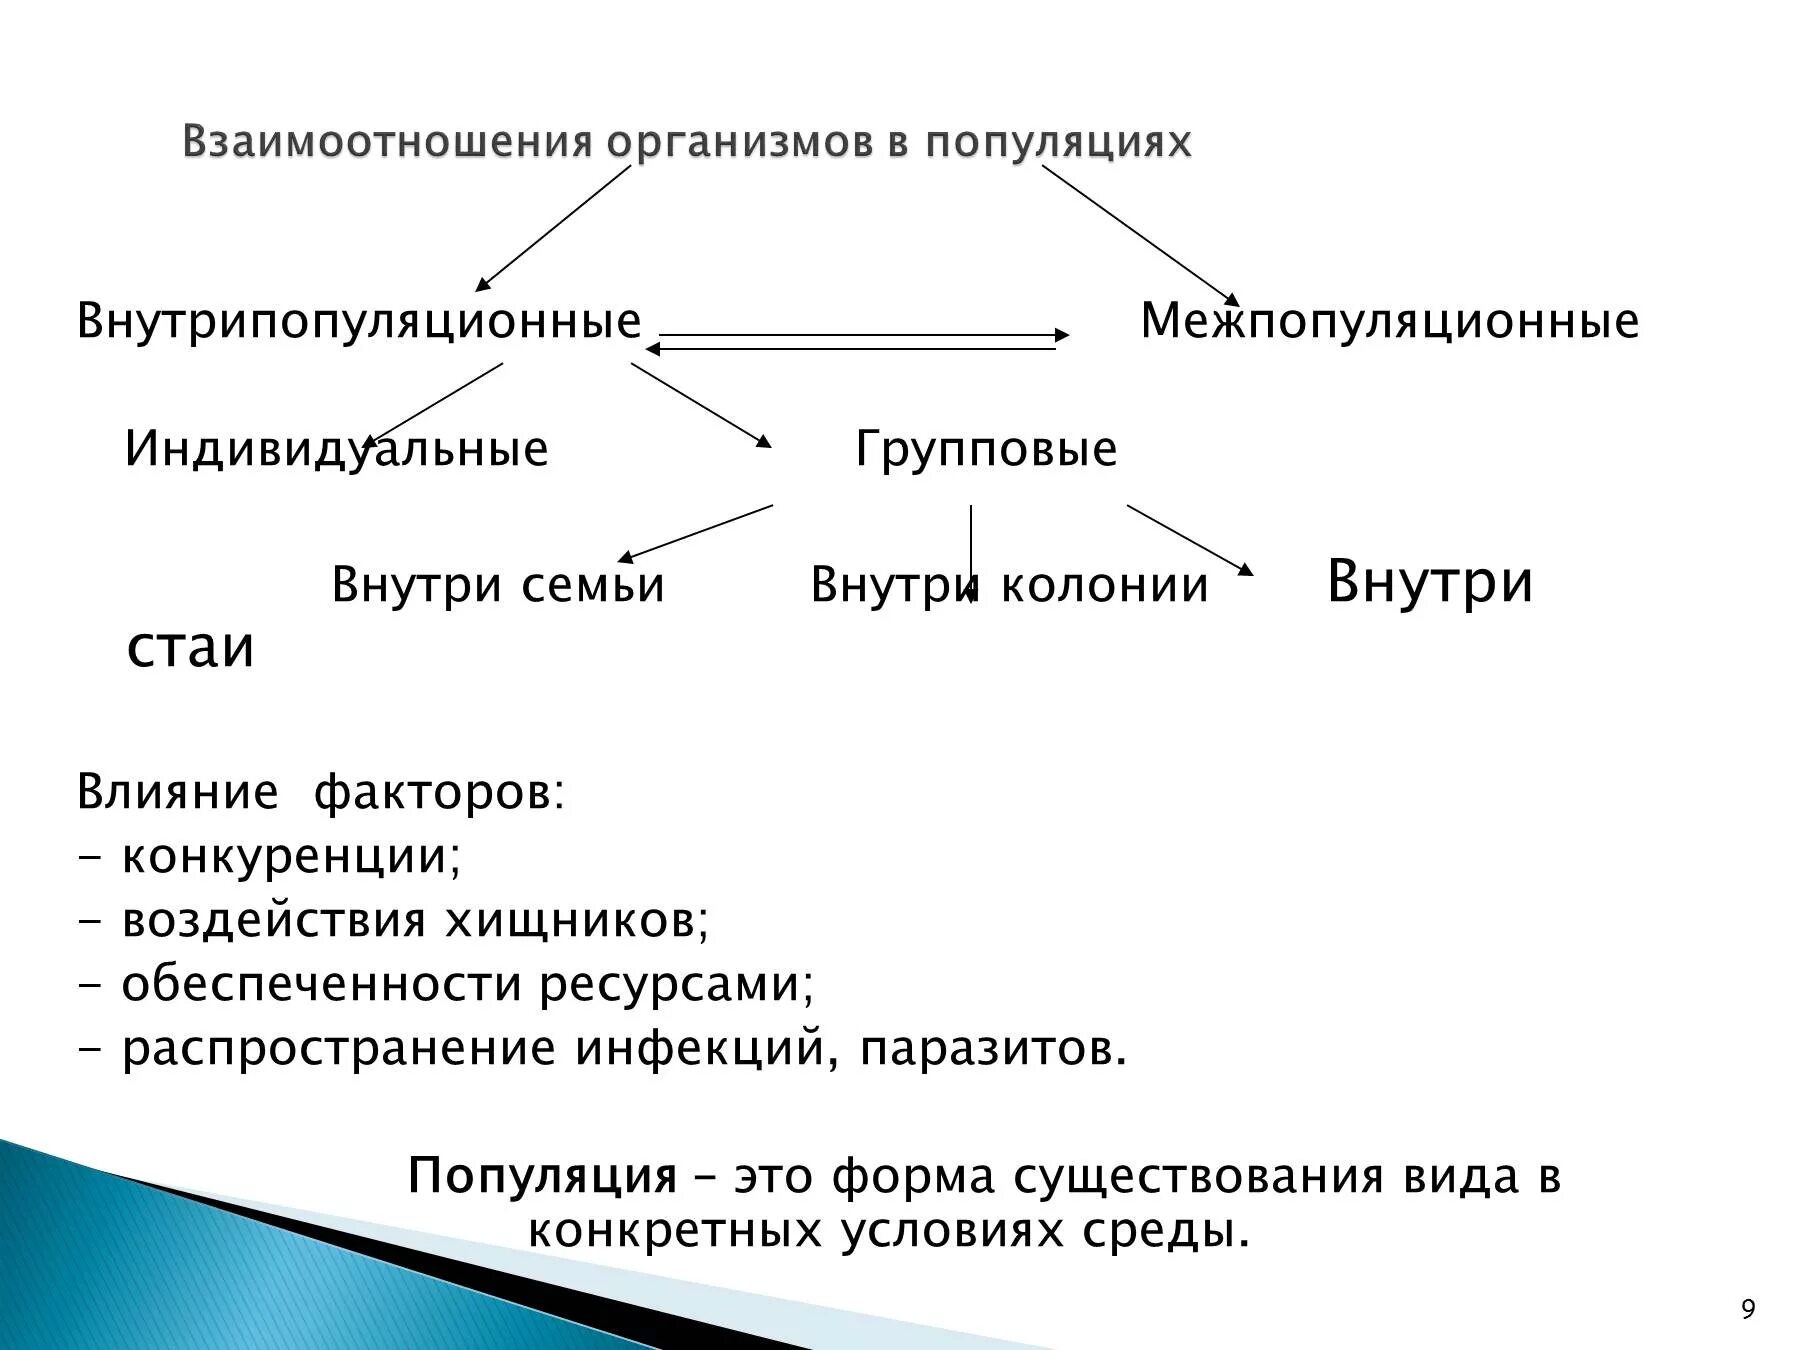 Структура популяции биология 9 класс. Типы взаимоотношений организмов схема. Взаимоотношения организмов в популяциях. Взаимосвязи организмов в популяции.